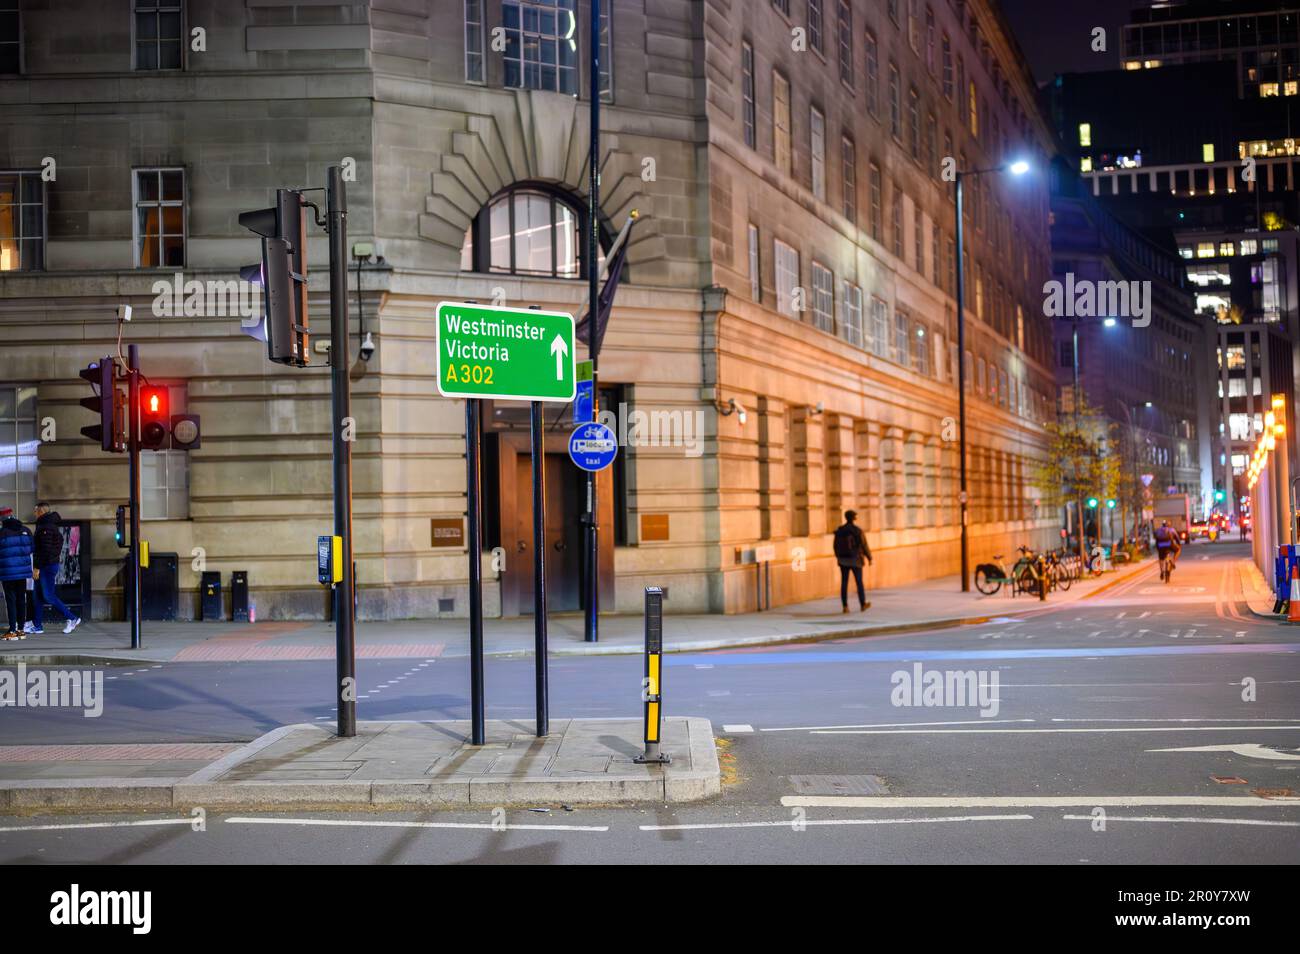 LONDRA - 21 aprile 2023: Scopri i simboli di Londra con l'insegna illuminata Westminster e Victoria fuori dalla County Hall di Southb Foto Stock